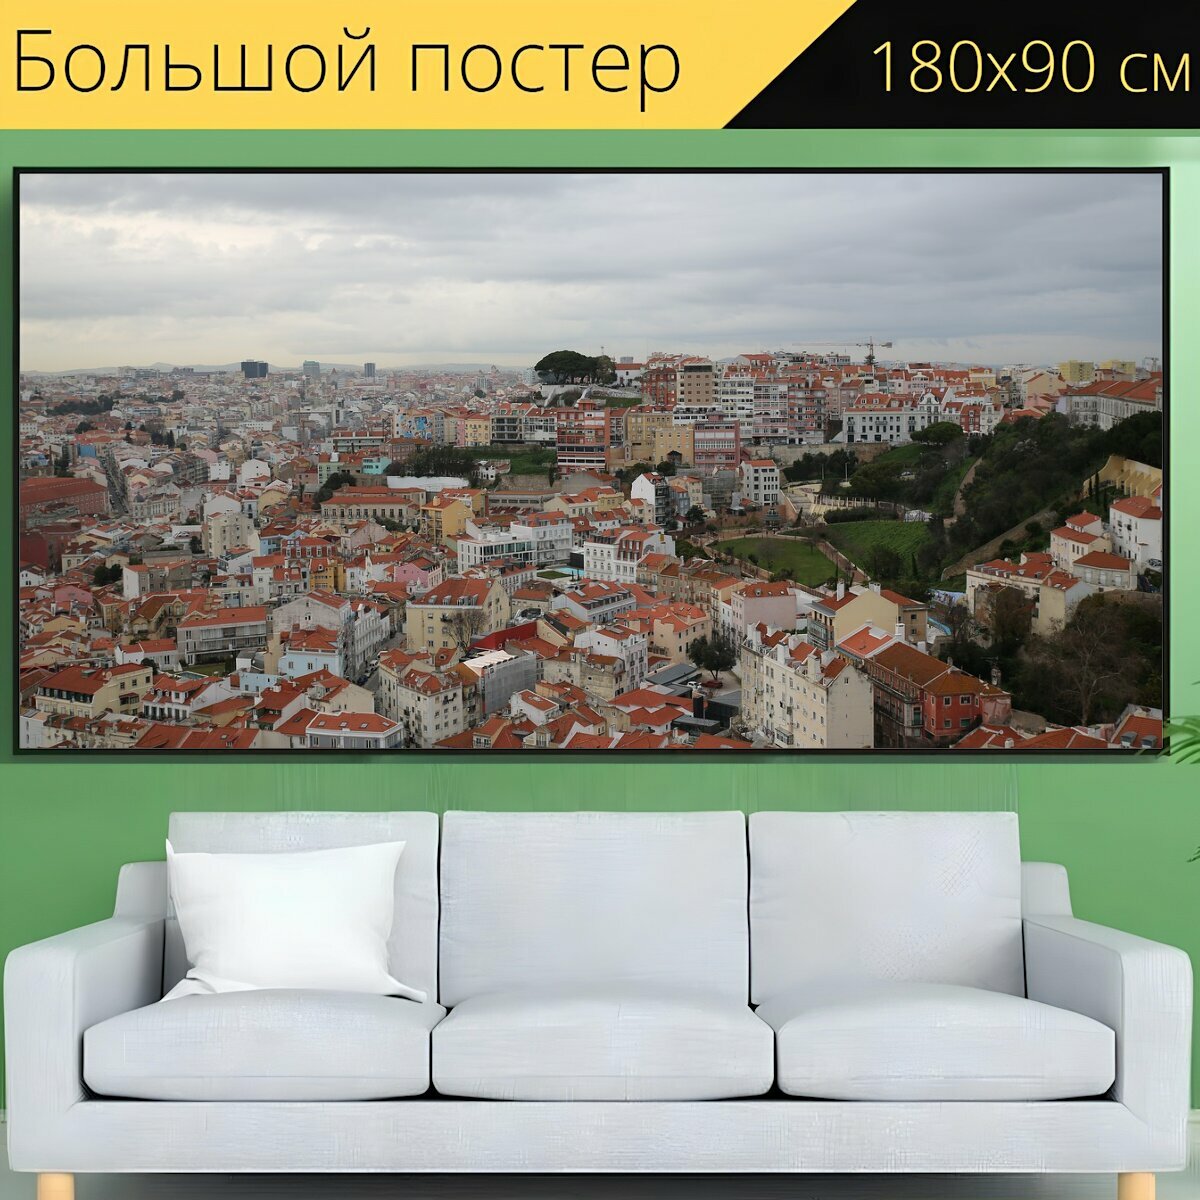 Большой постер "Лиссабон, дом, португалия" 180 x 90 см. для интерьера